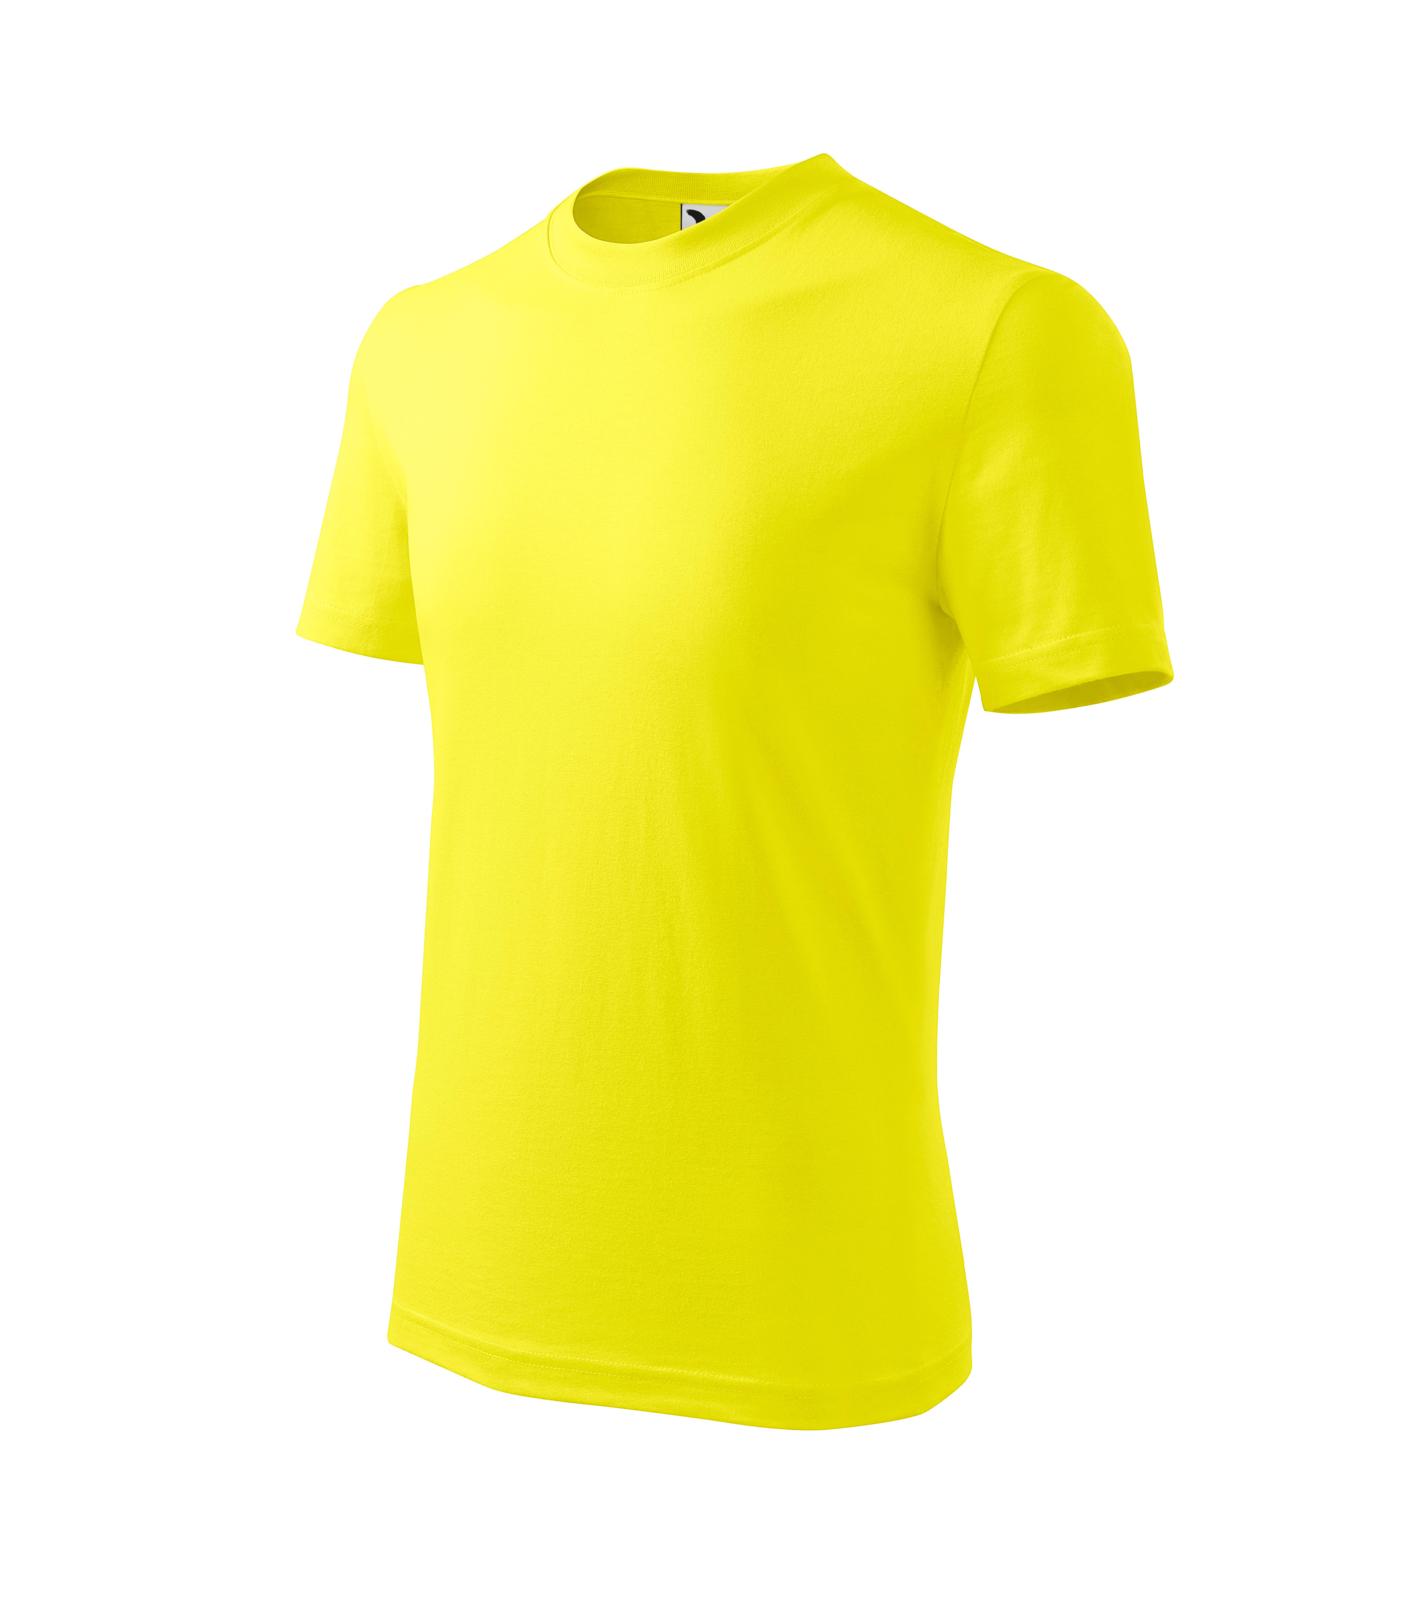 Basic Tričko dětské Barva: citronová, Velikost: 110 cm/4 roky